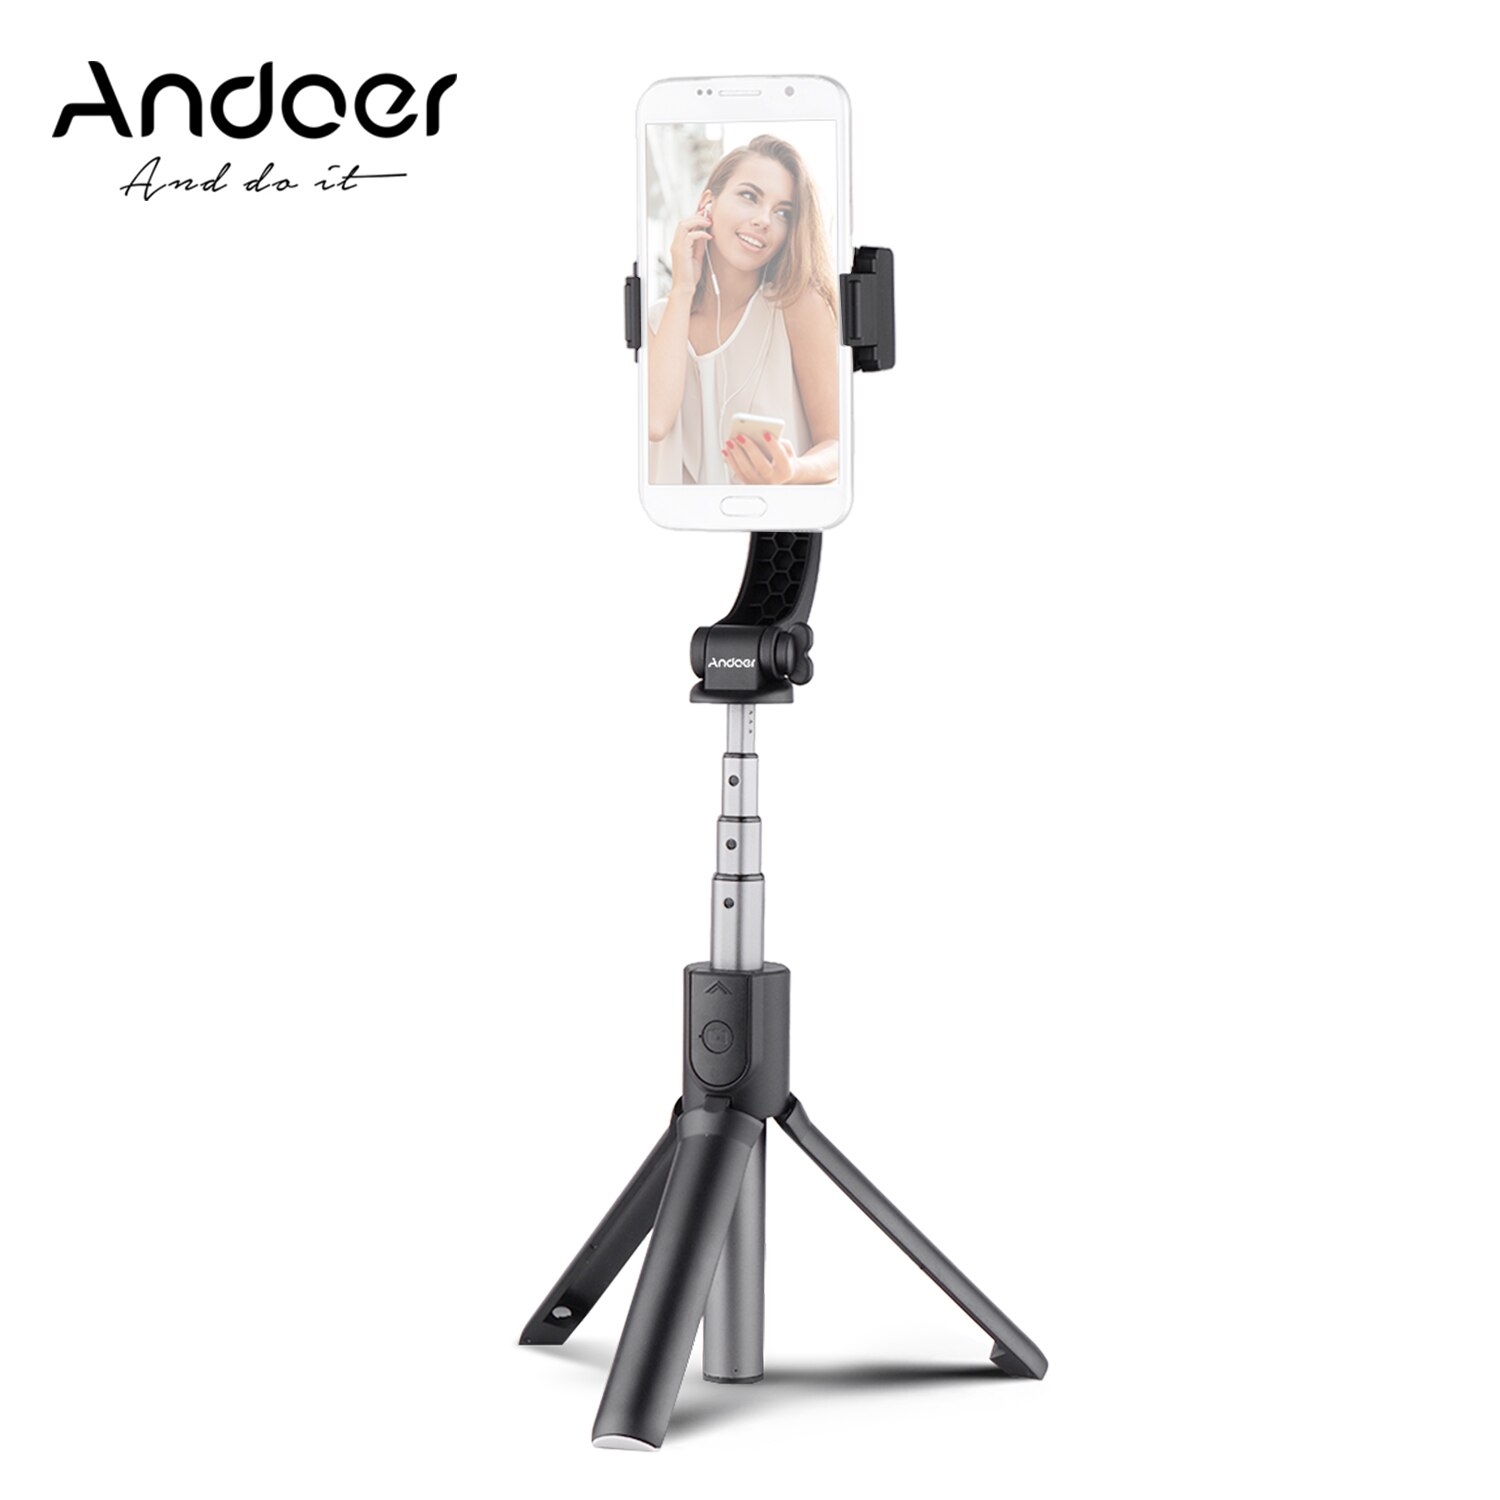 Andoer 3-In-1 Uitschuifbare Smartphone Gimbal Stabilizer + Selfie Stok + Tripod Stand Voor Live Vloging Video voor Smartphones